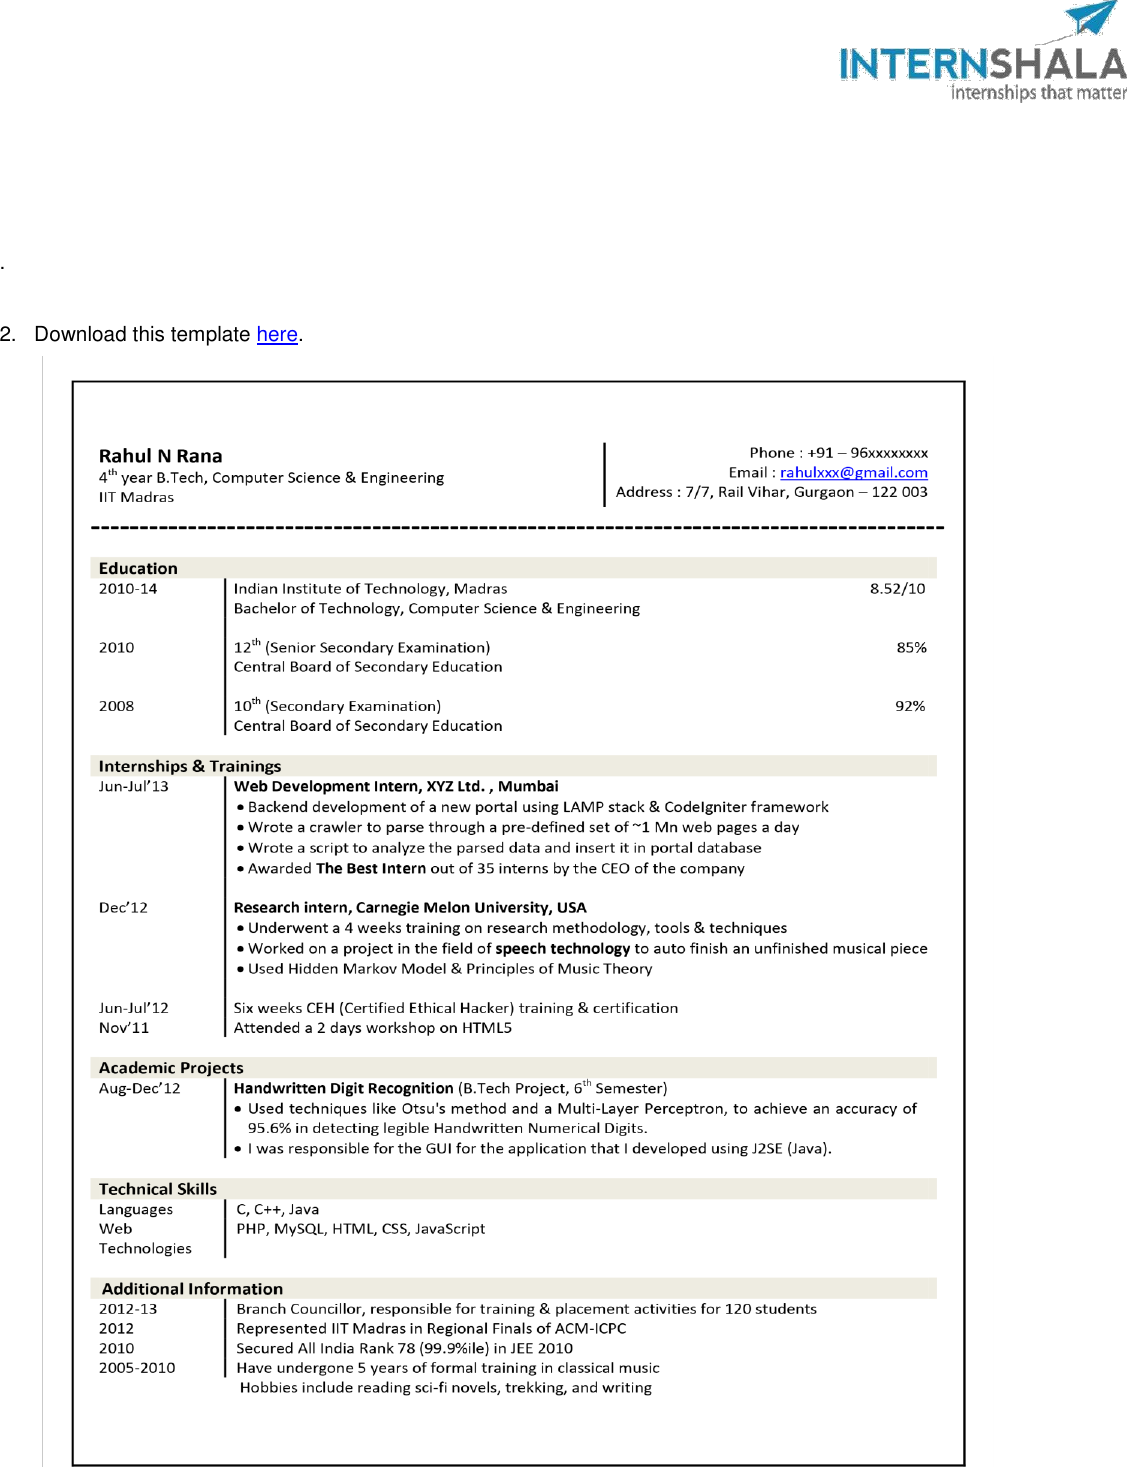 Page 7 of 8 - Internshala Resume Guide